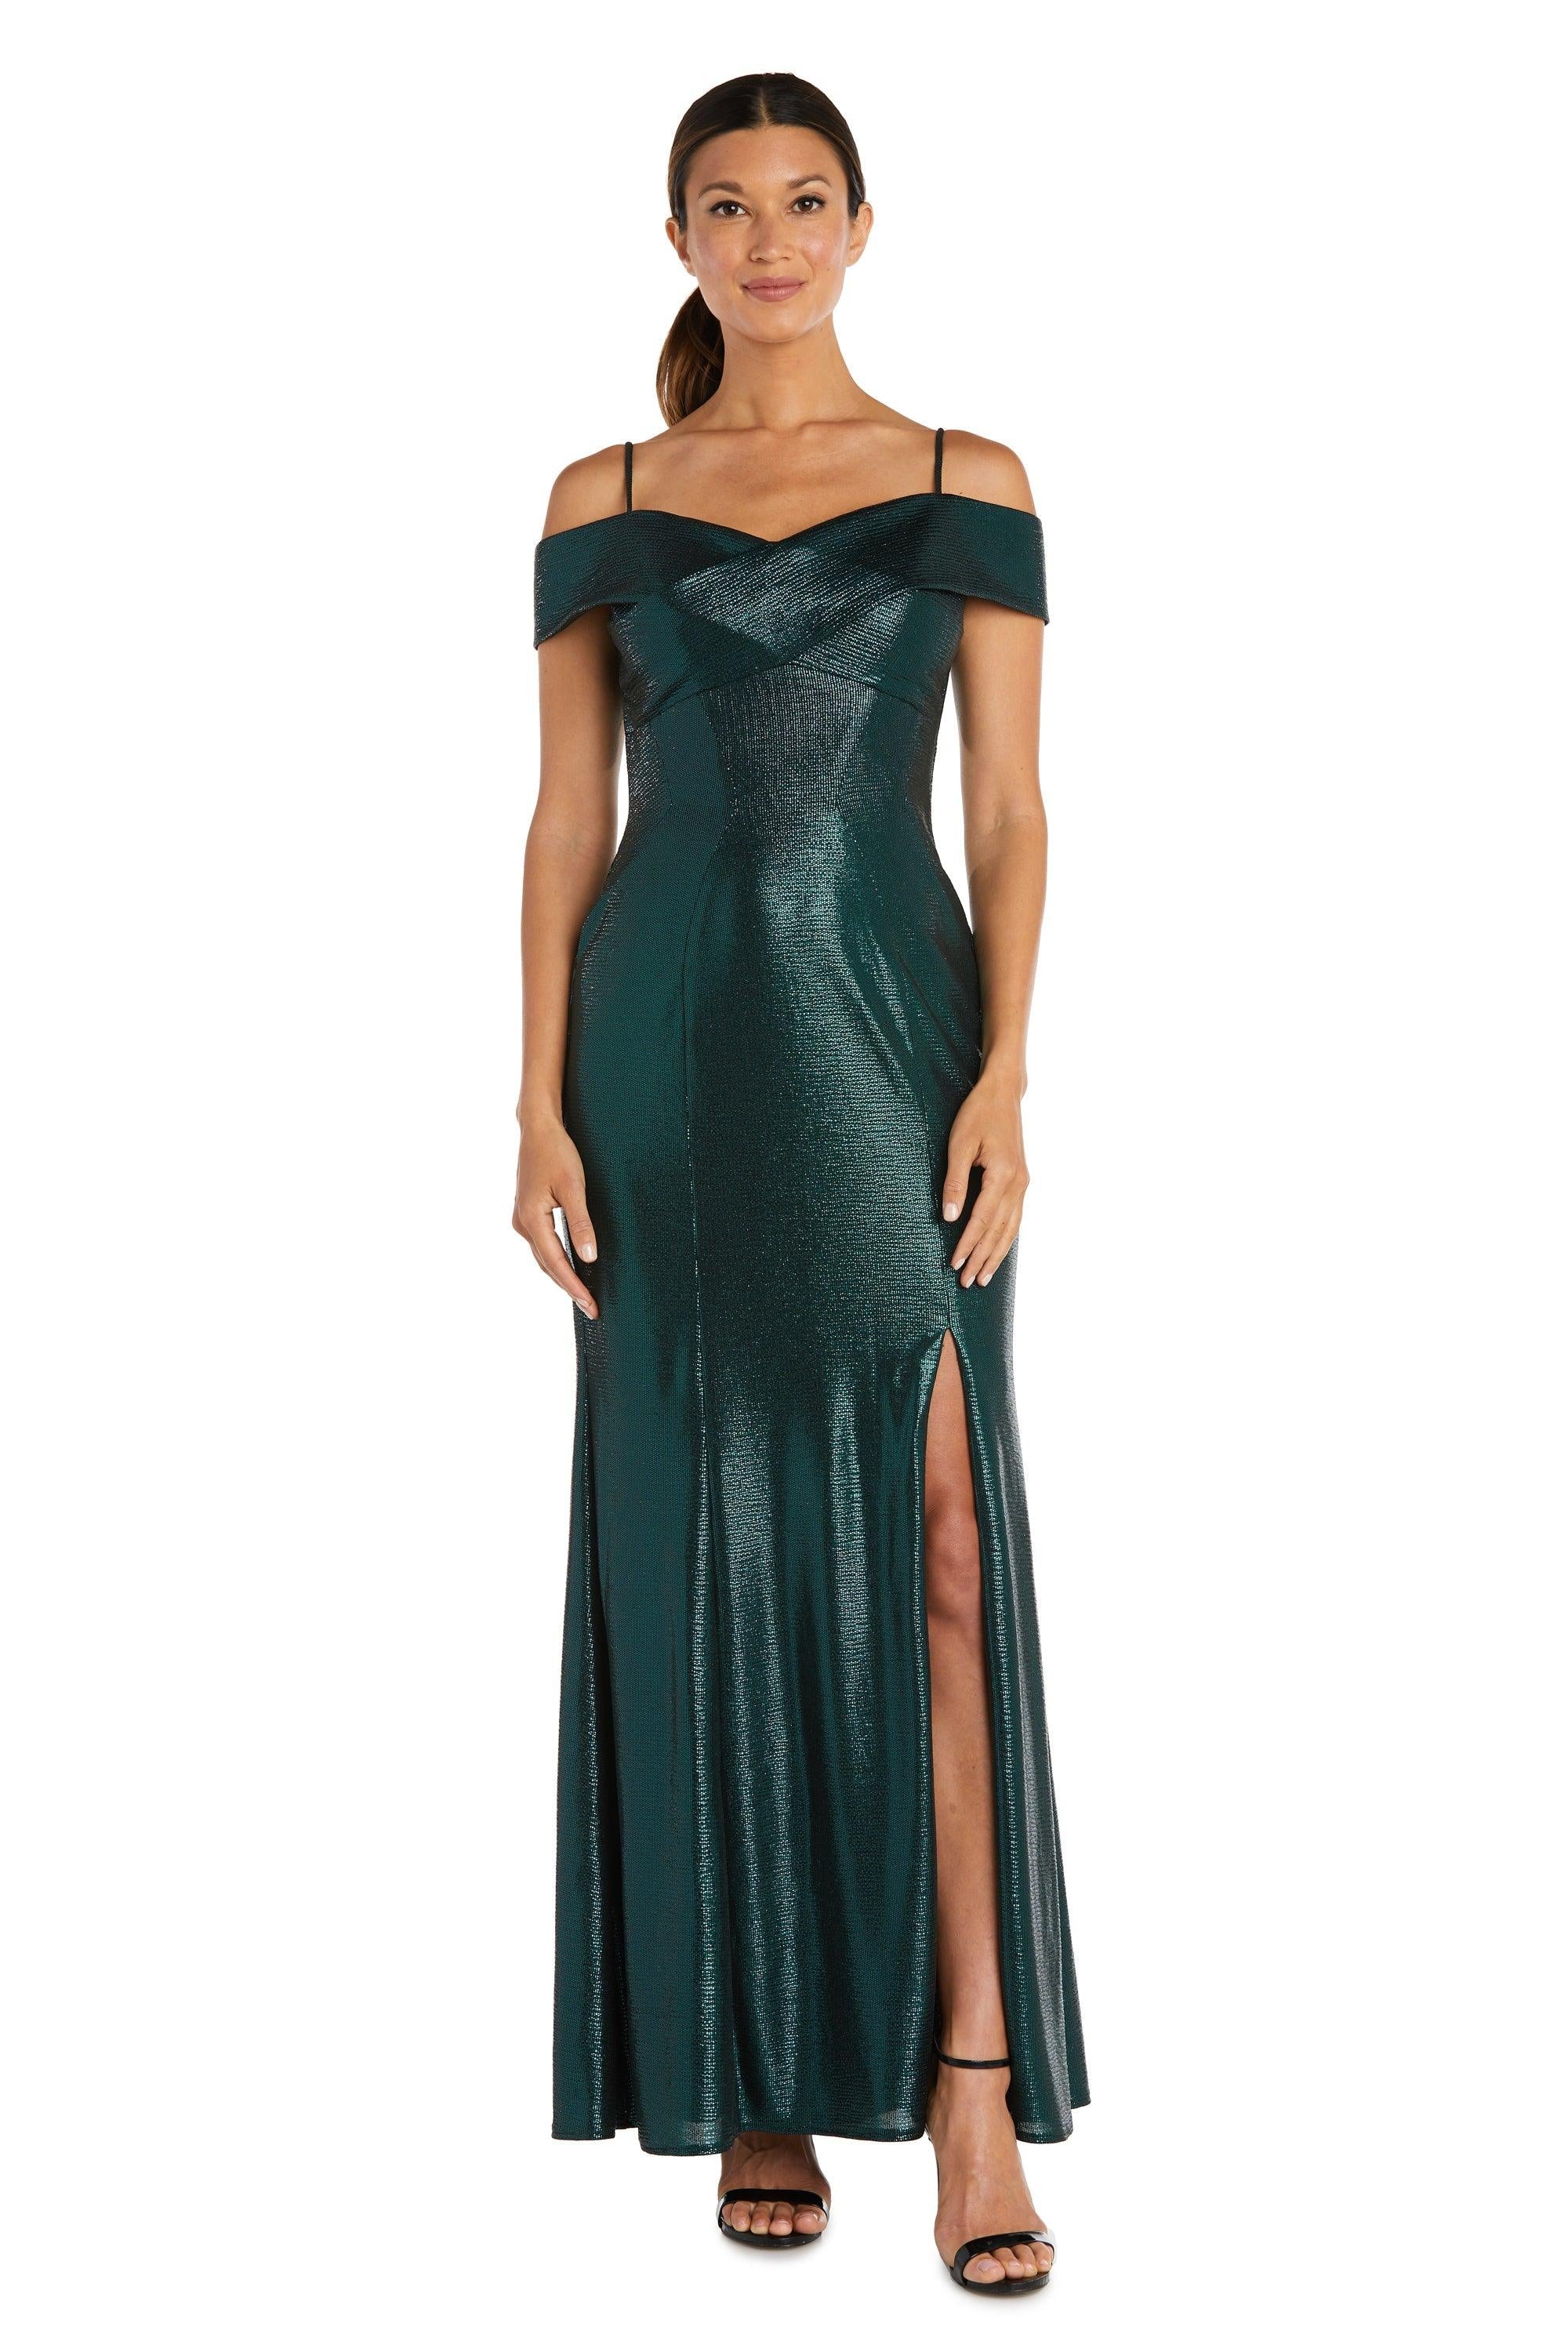 Black/Emerald Nightway Off Shoulder Long Formal Dress 21761P for $110.99, –  The Dress Outlet